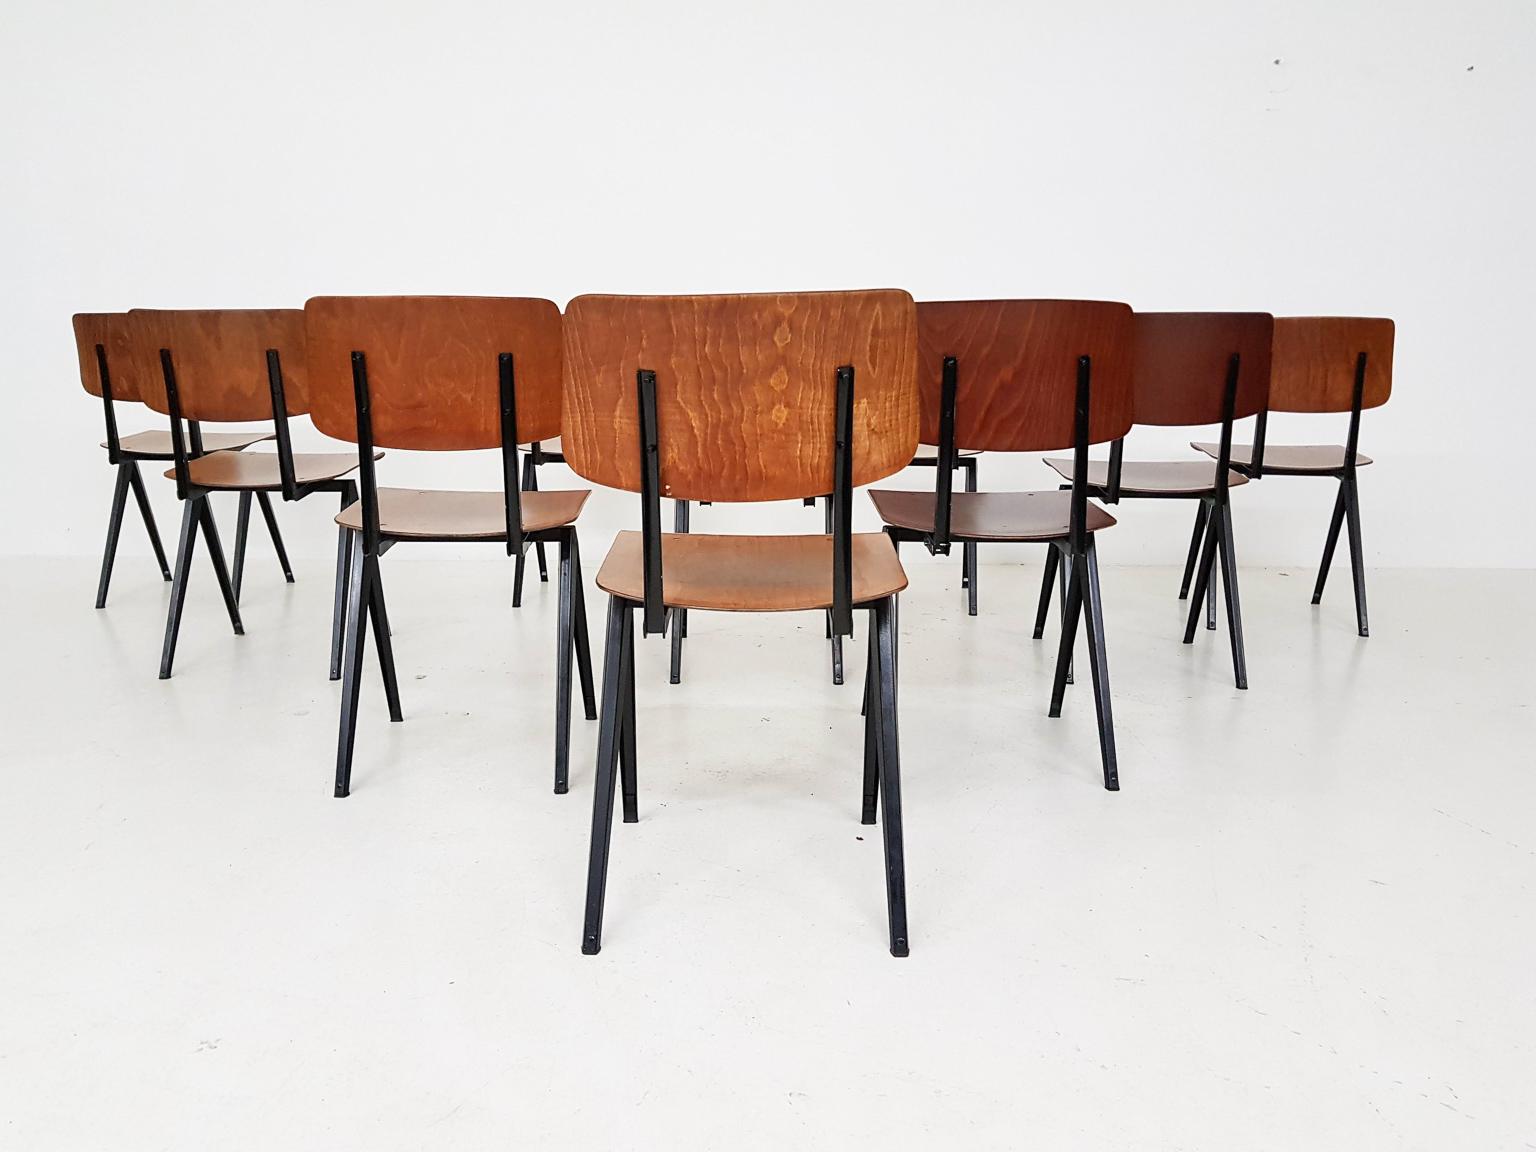 Metal Set of 10 Galavanitas S16 Industrial Plywood School Chairs, Dutch Design, 1960s